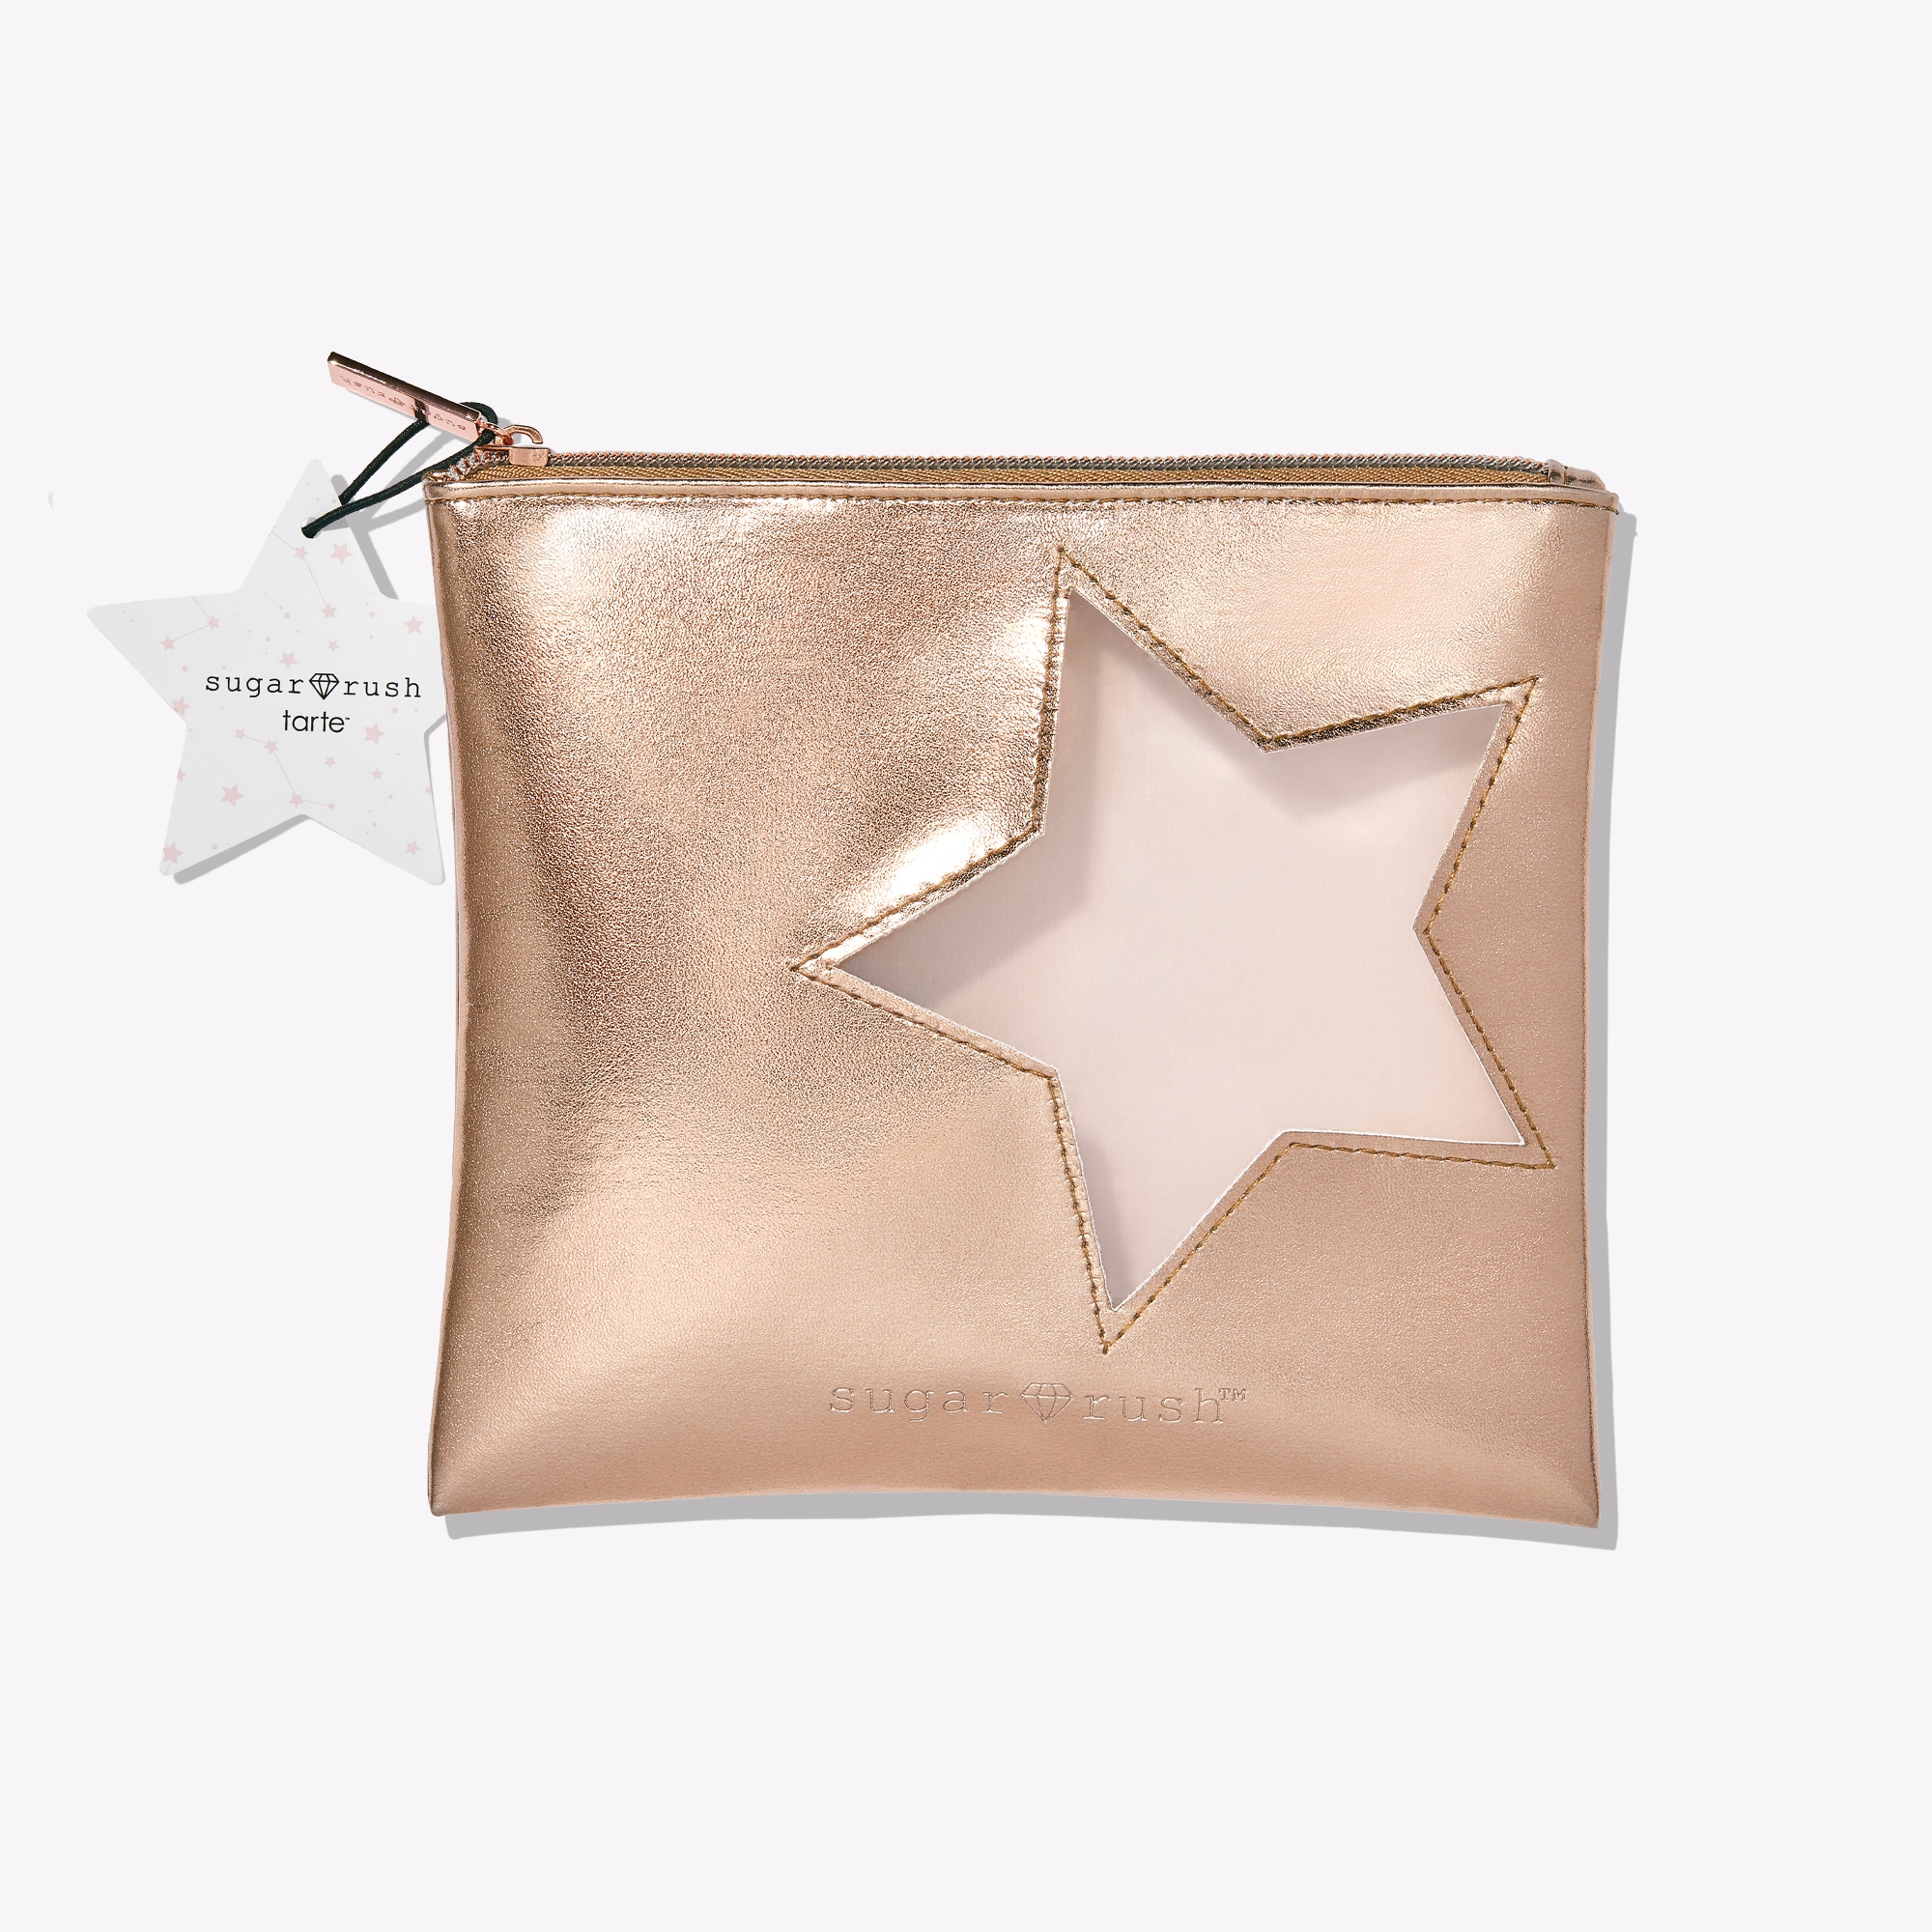 sugar rush™ star struck makeup bag